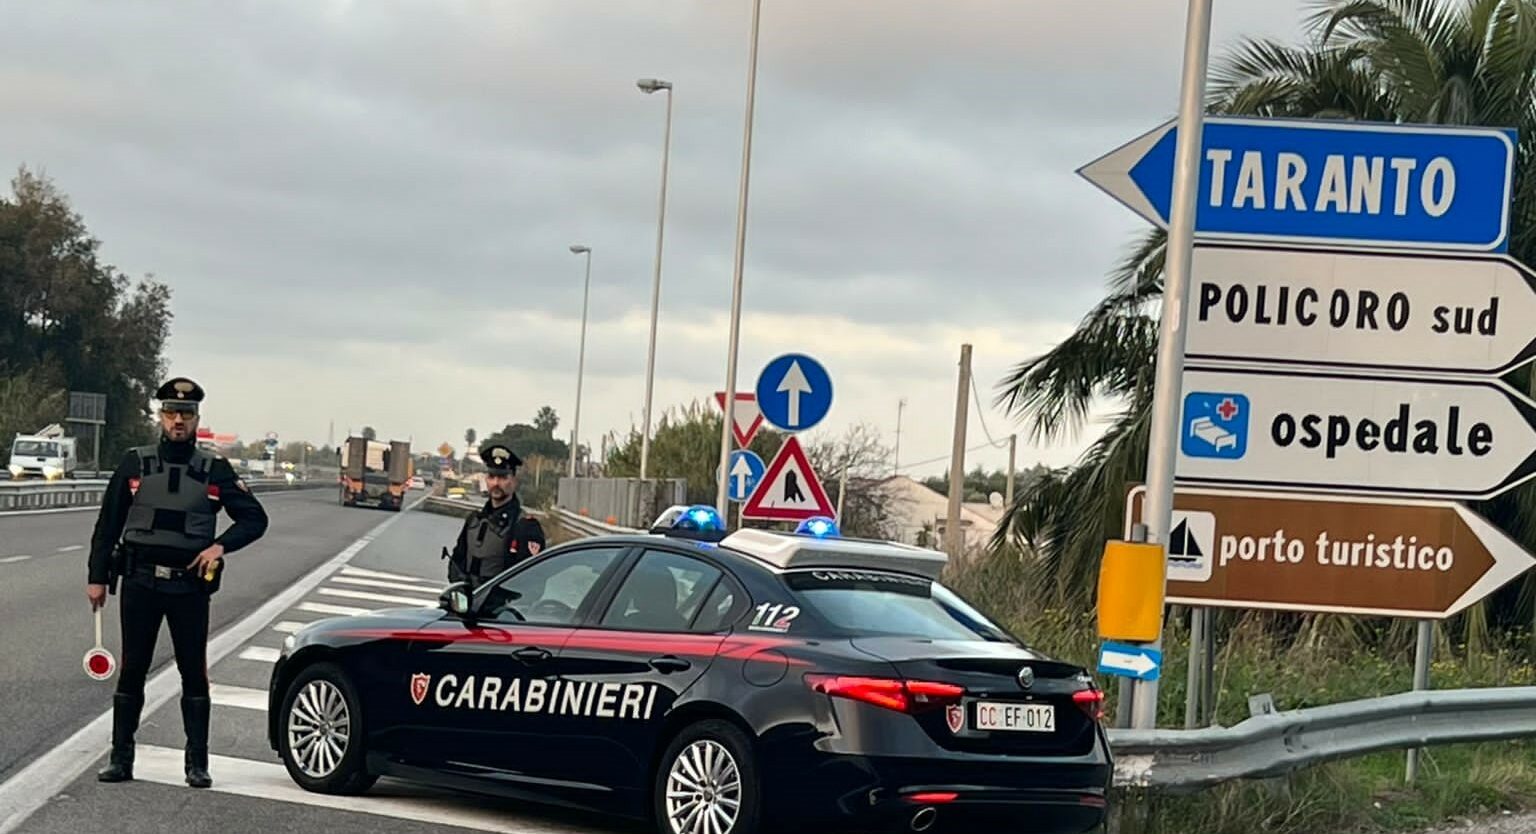 Policoro, tre persone arrestate dai Carabinieri